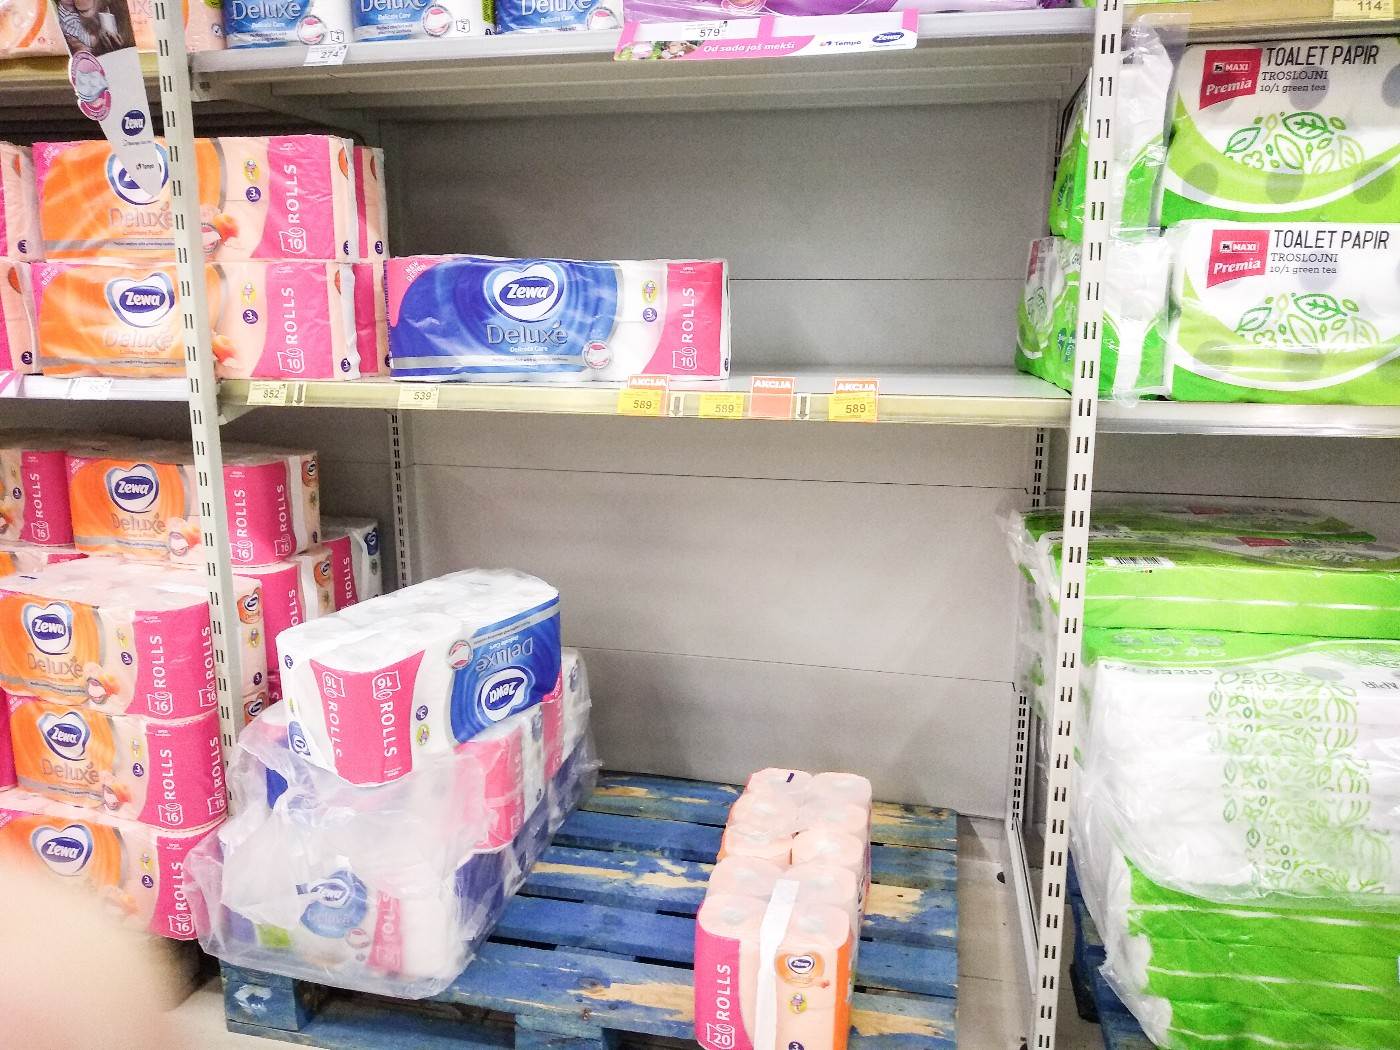  korona virus pandemija toalet papir pomama prodavnice 